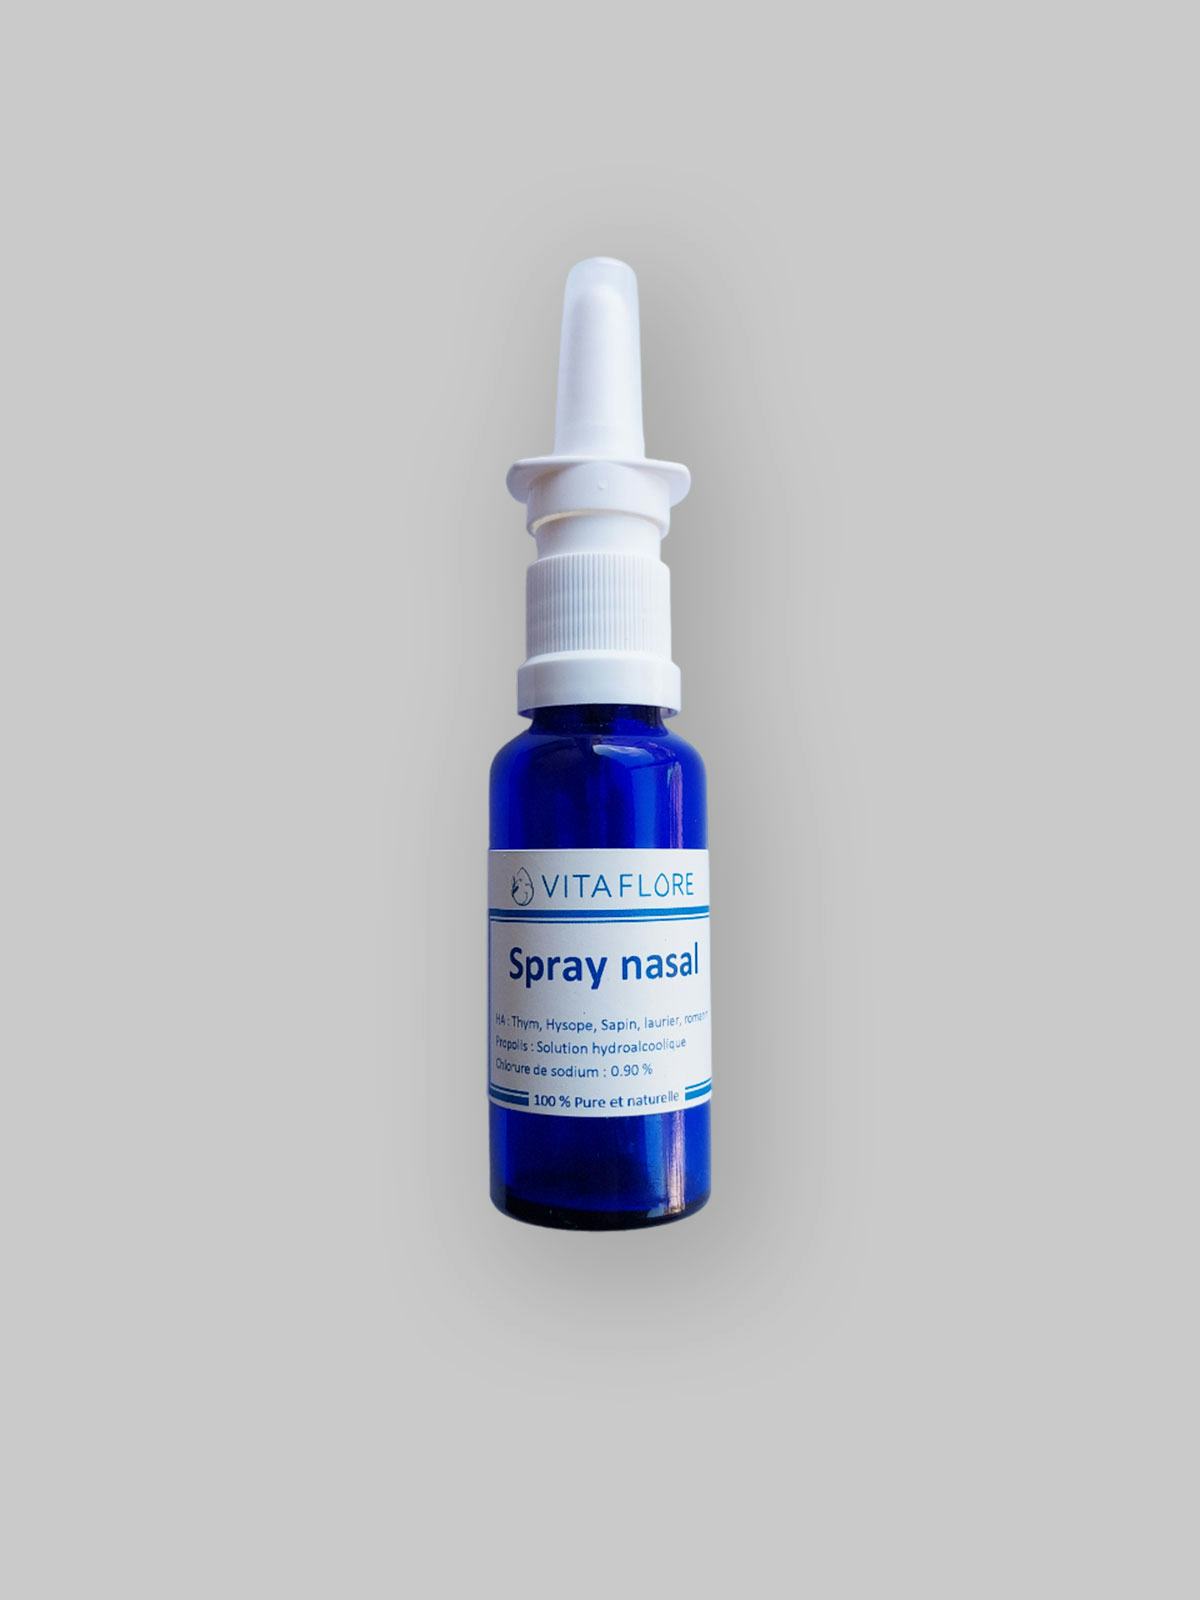 Spray nasal, handwerkliches Produkt für den Direktverkauf in der Schweiz